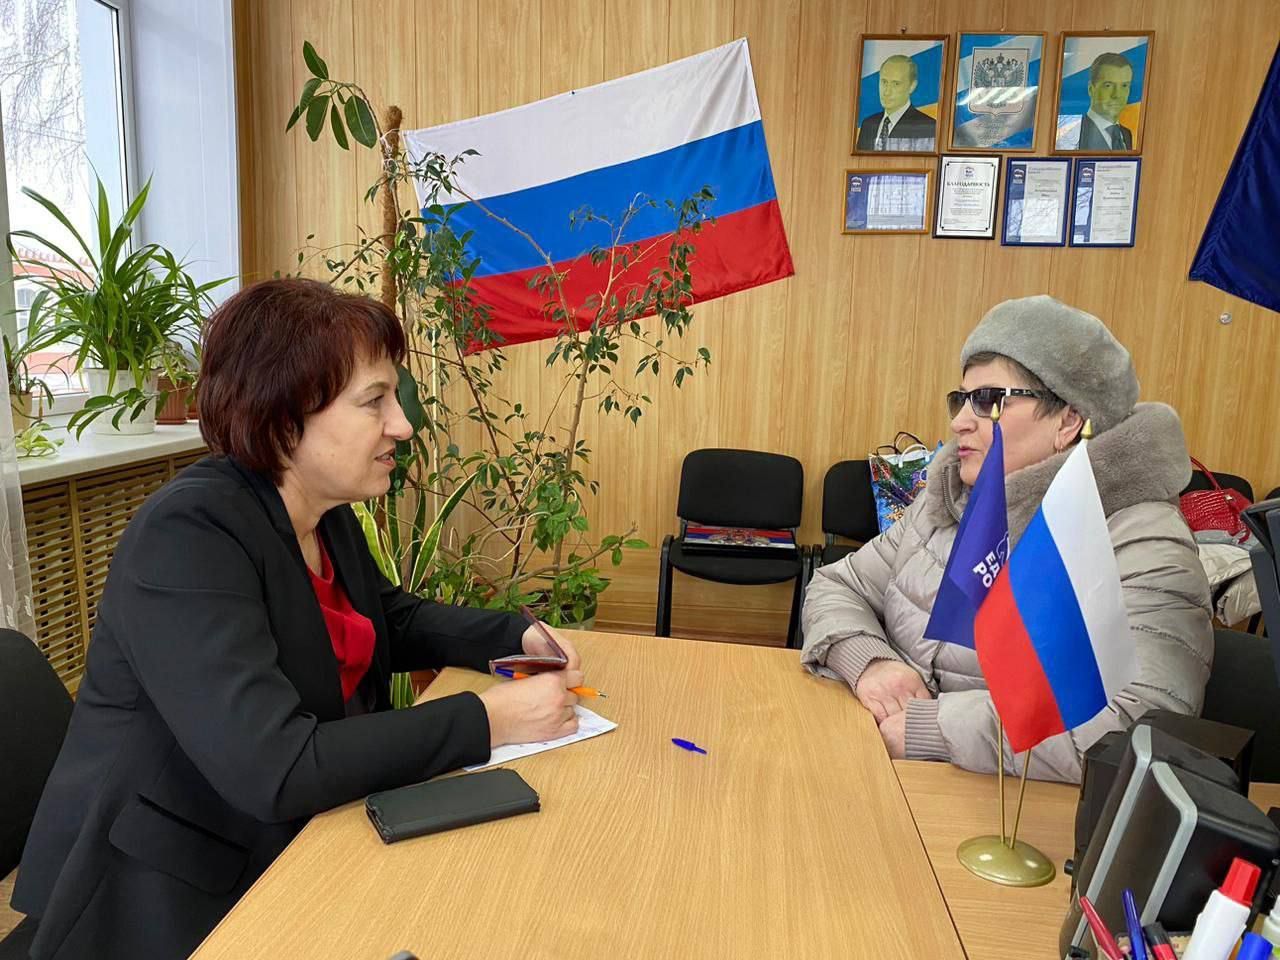 Представители Ульяновского реготделения провели приём граждан на площадках партии “Единая Россия”